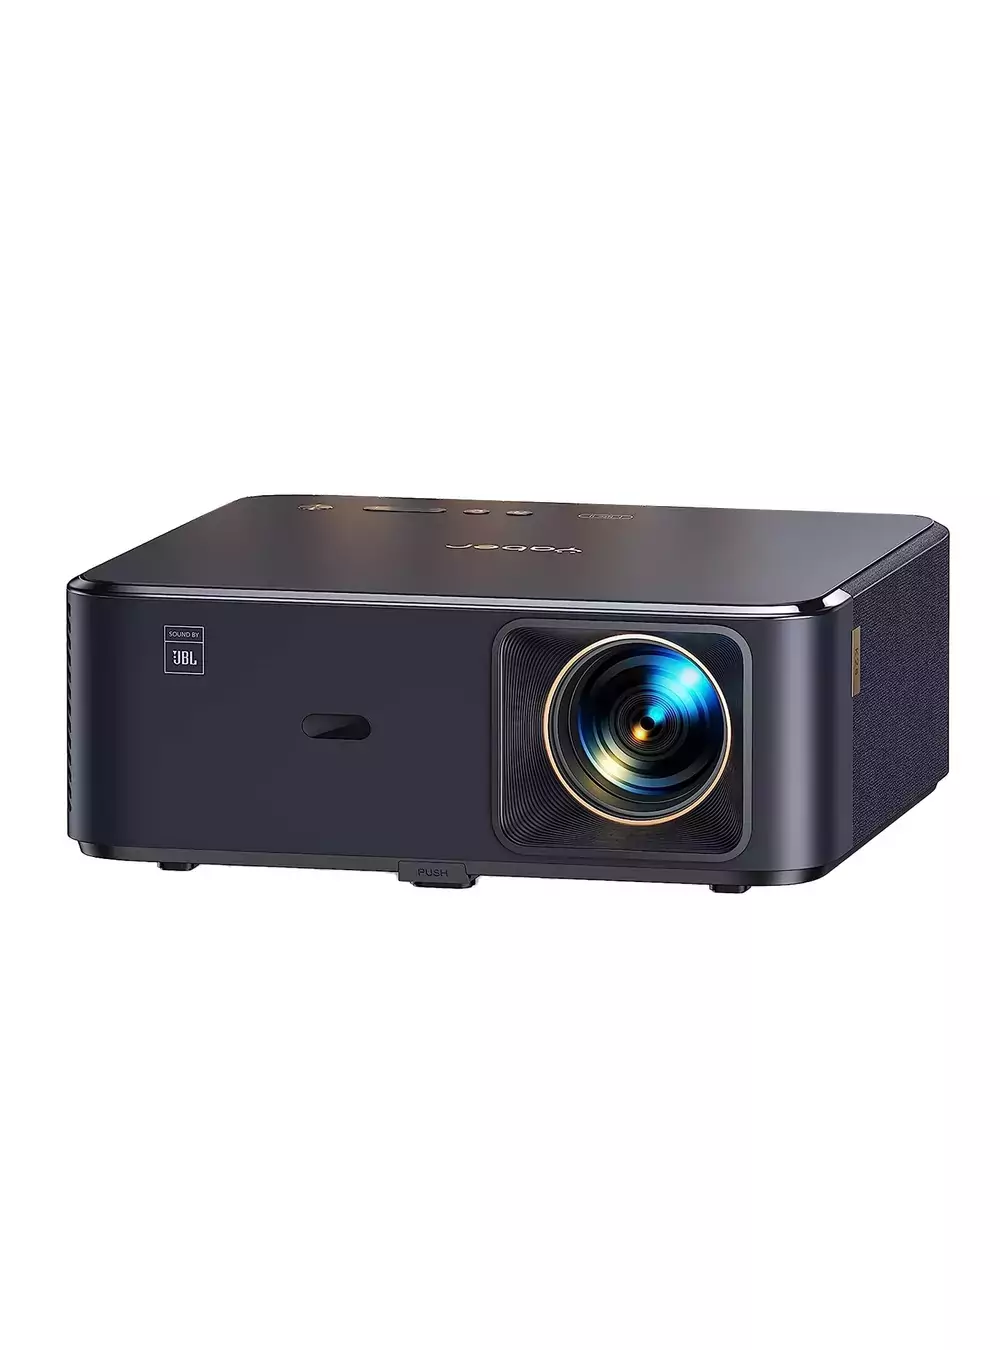 Yaber K2s Full HD LED Projector WiFi6 BT/NFC JBL Alexa 800 Ansi, Projectors